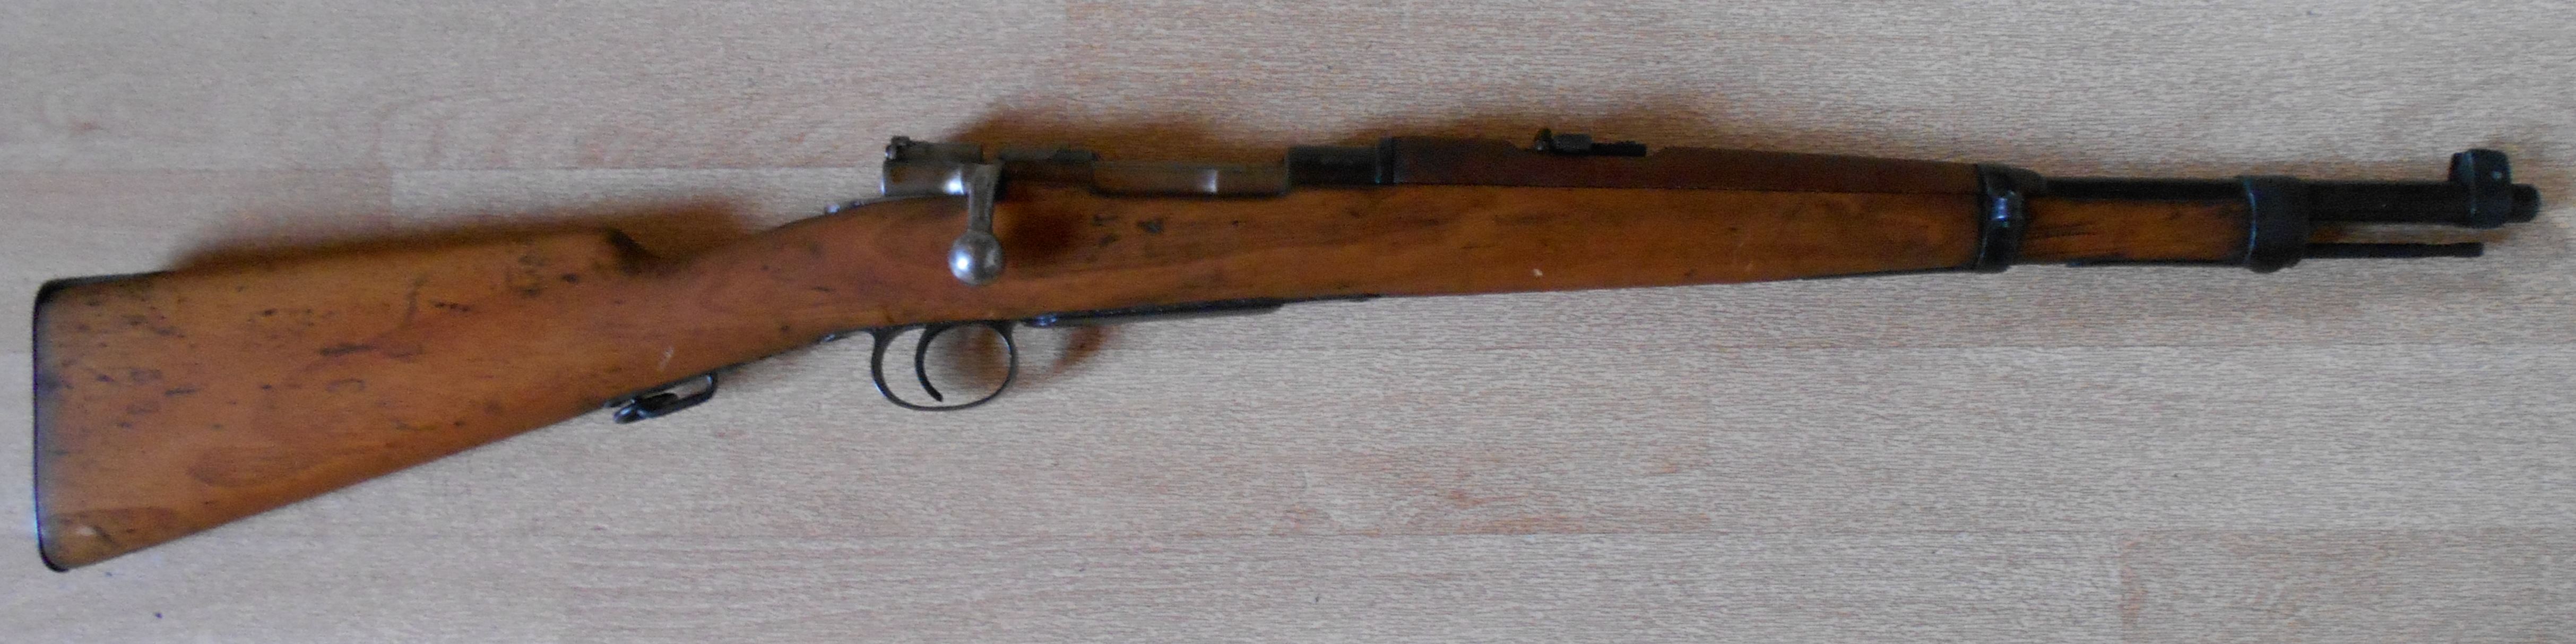 Mauser brsilien Mle 1894 (carabine)